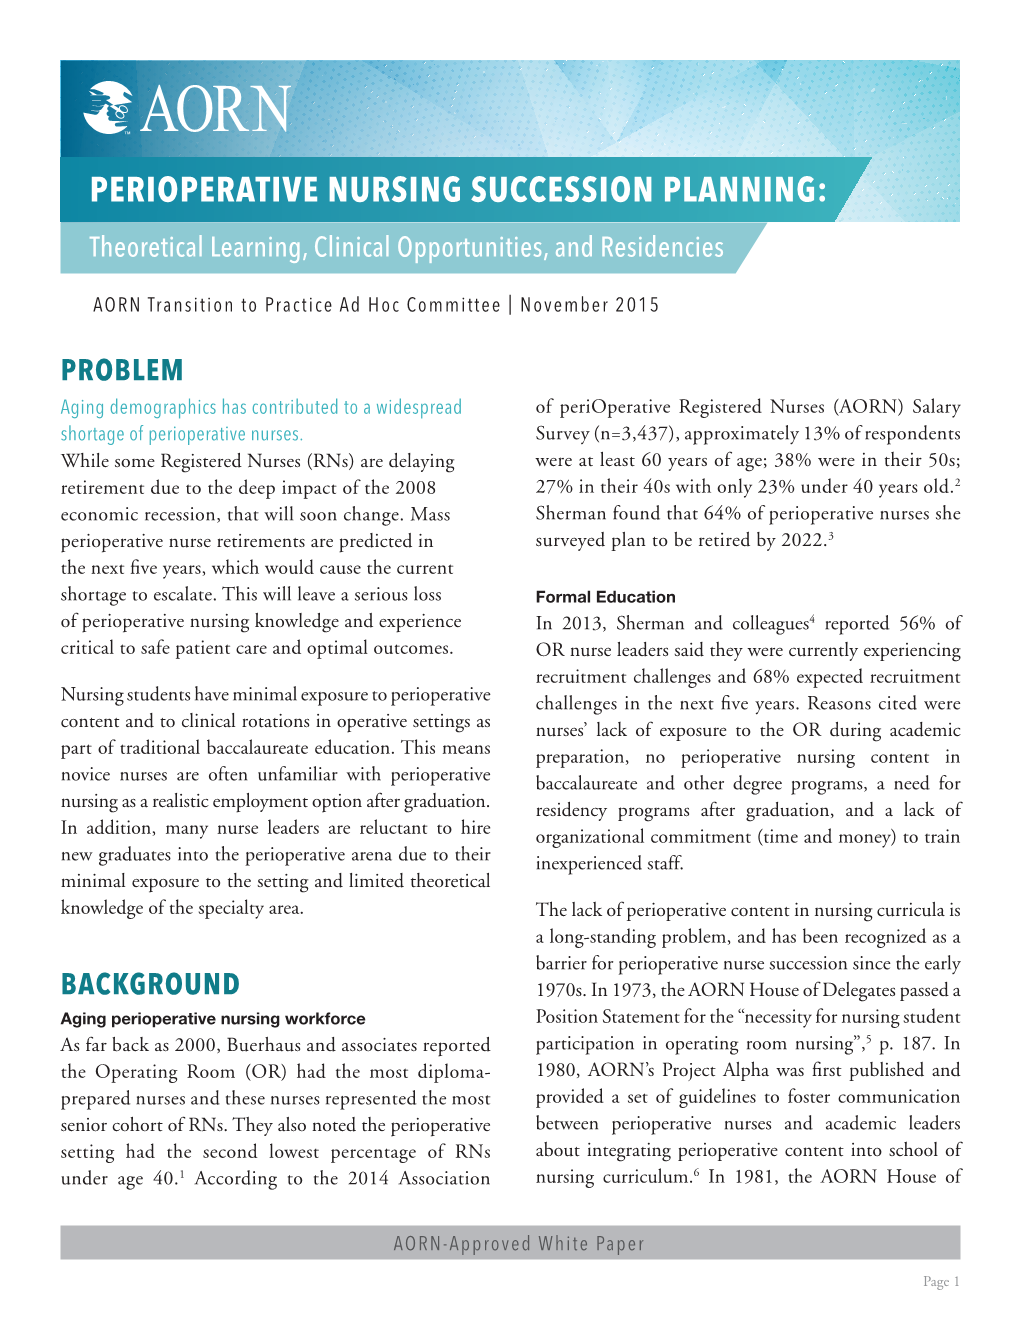 Perioperative Nursing Succession Planning White Paper